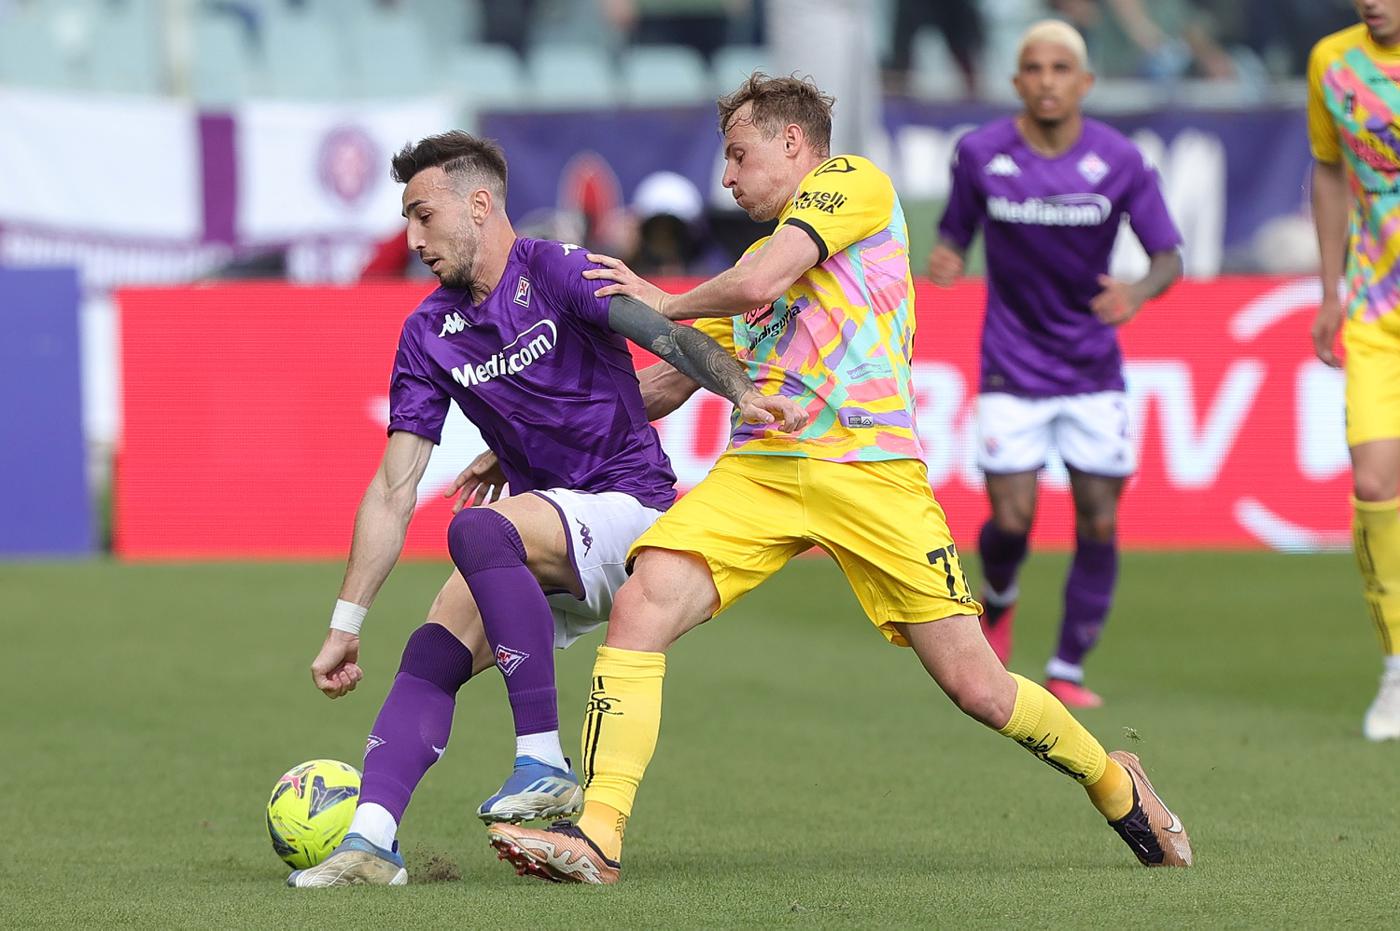 Fiorentina vs La Spezia - 1-1. Mistrzostwa Włoch, runda 29. Przegląd meczów, statystyki